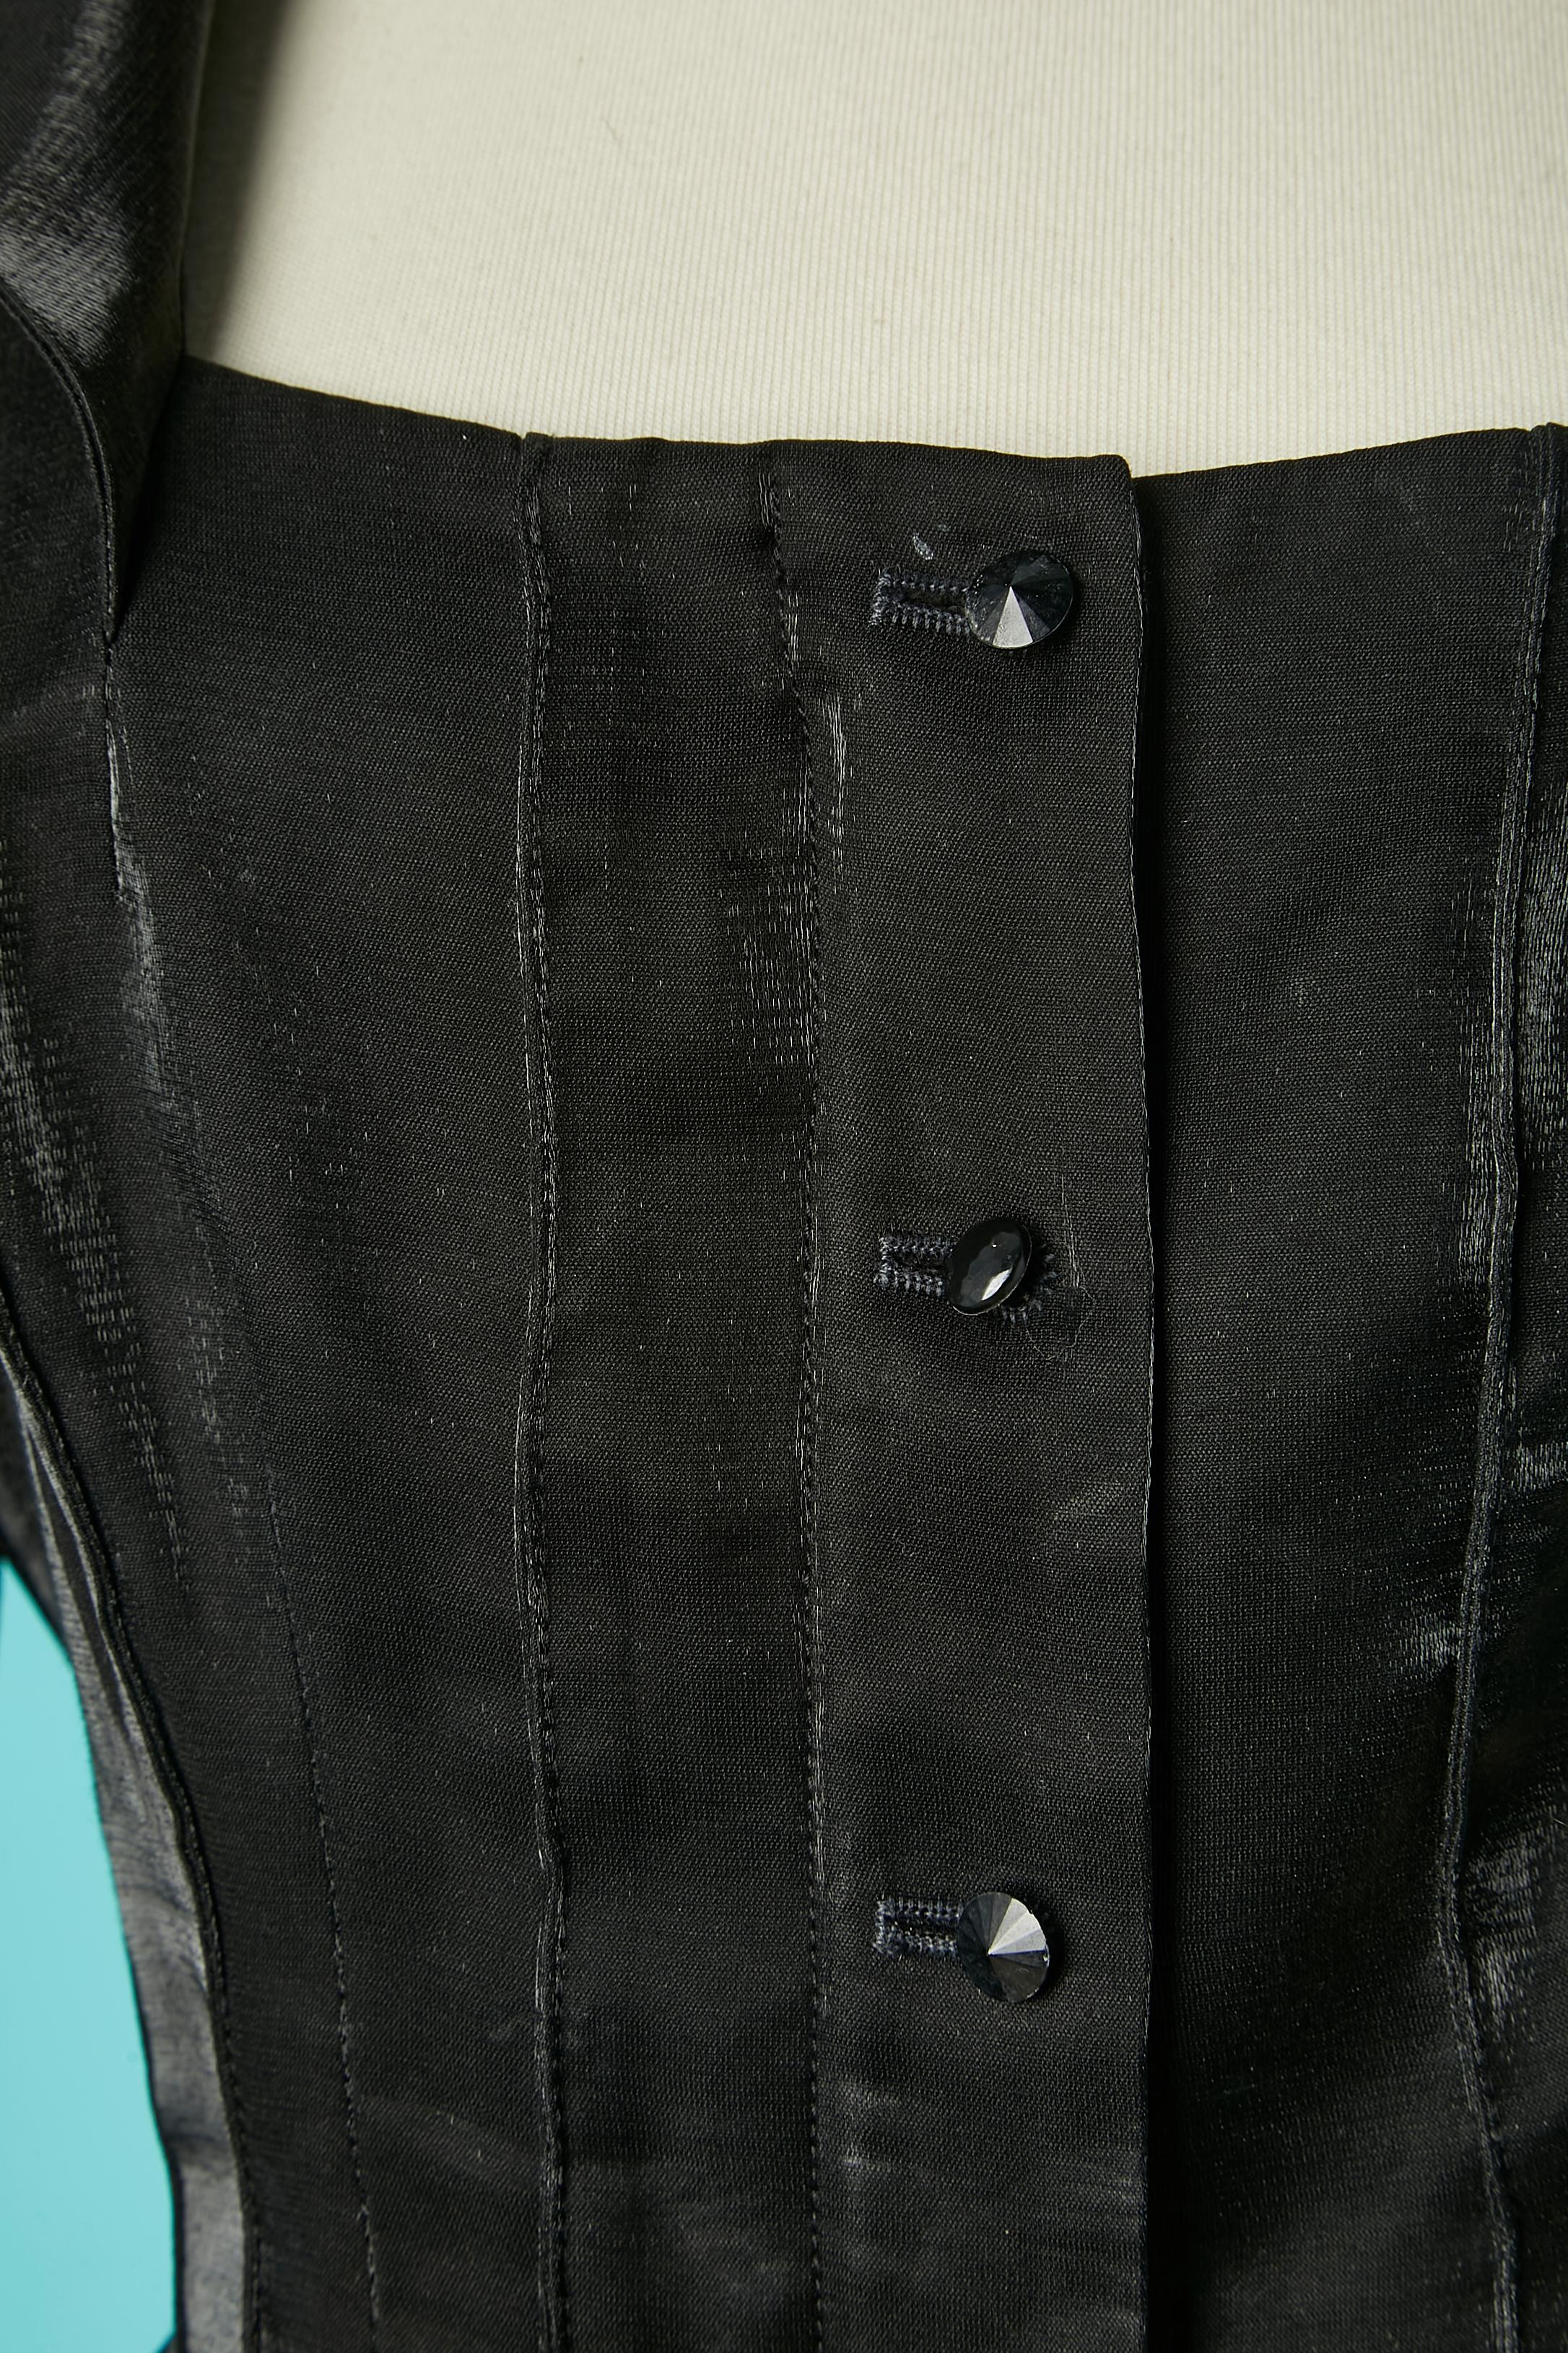 Glänzender schwarzer Abendrock -Anzug mit asymmetrischem Rock. Zusammensetzung des Hauptgewebes: 91% Polyester, 9% Viskose. 
Schulter-Pad. Verdeckter Reißverschluss in der Mitte der Vorderseite mit Knopfleiste an der Oberseite. Rüschen am Ärmelrand